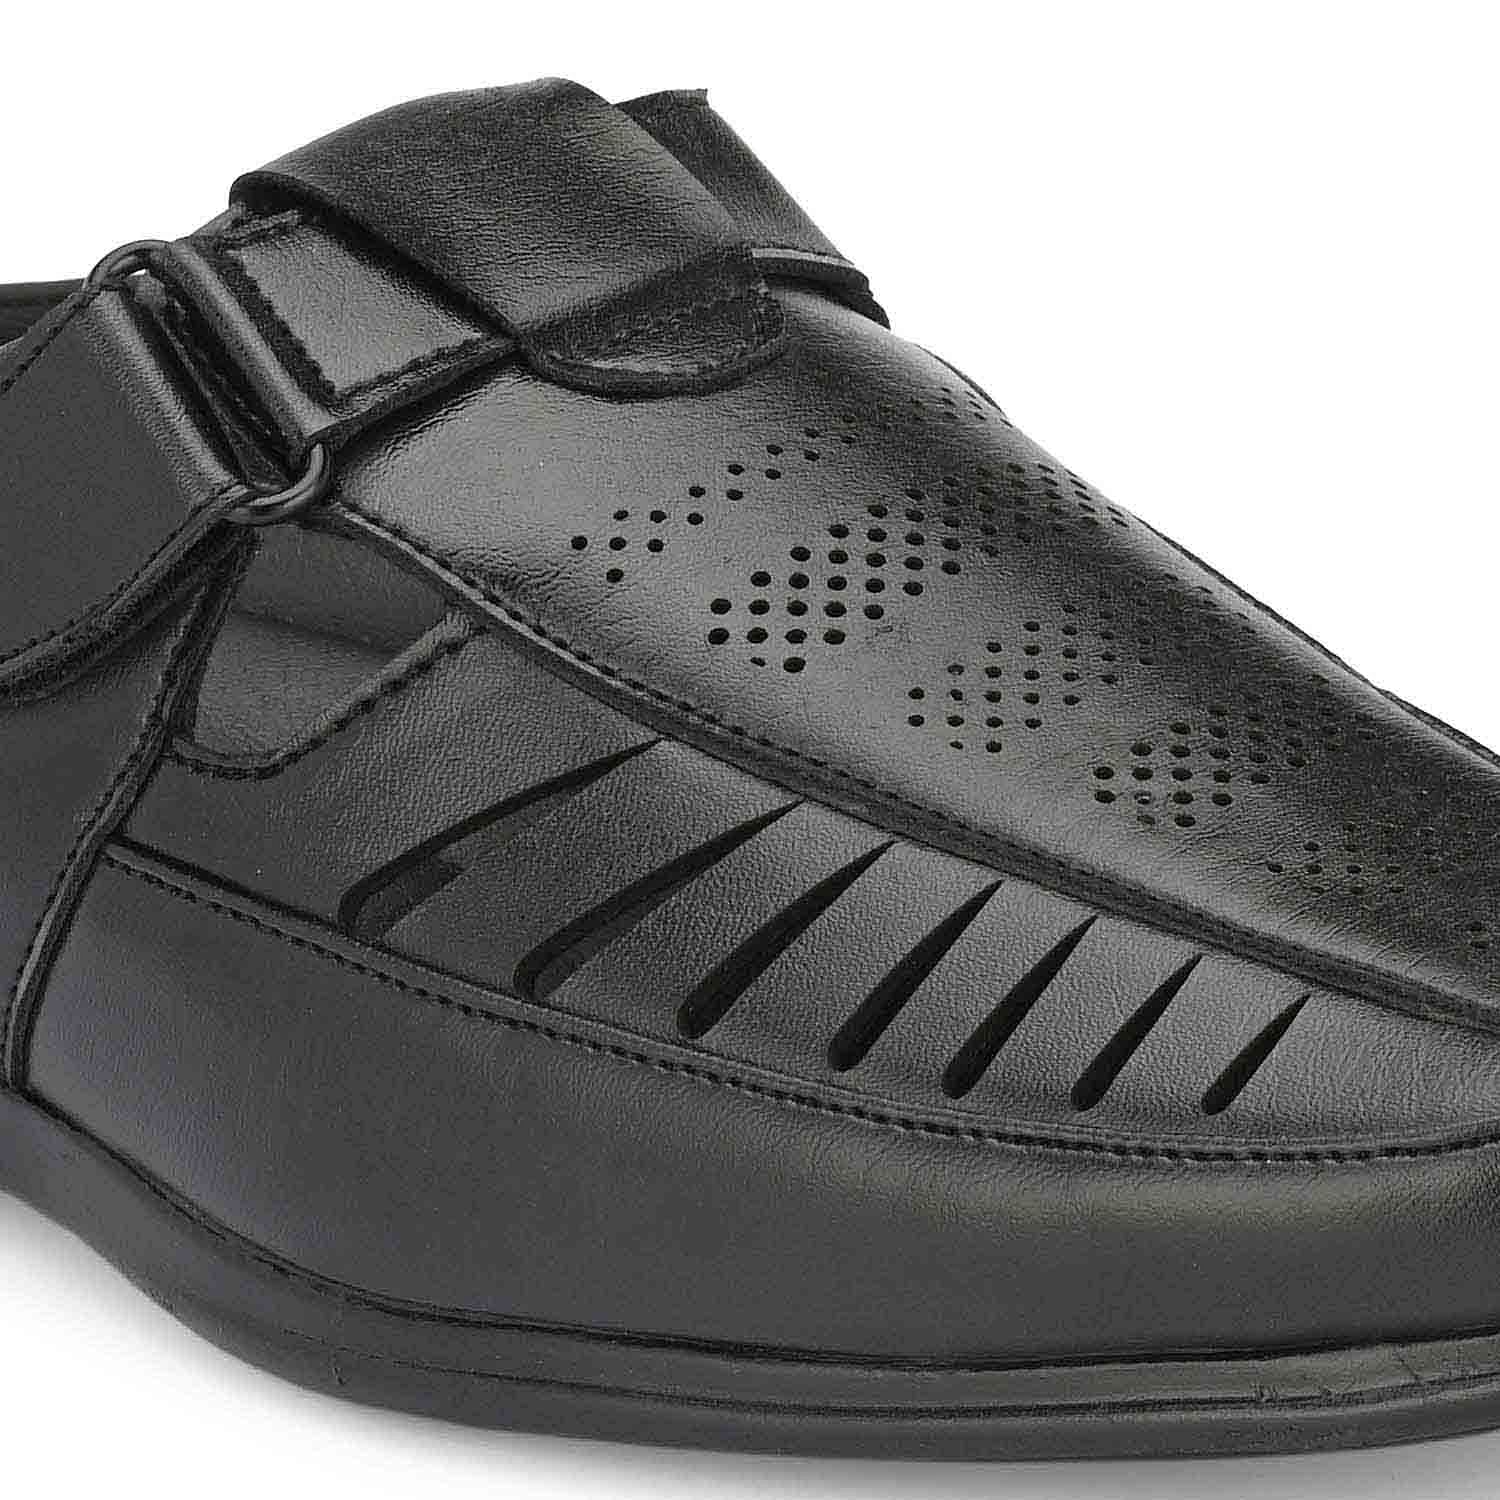 Pair-it Mn Sandals - Black-LZ-Roman-107